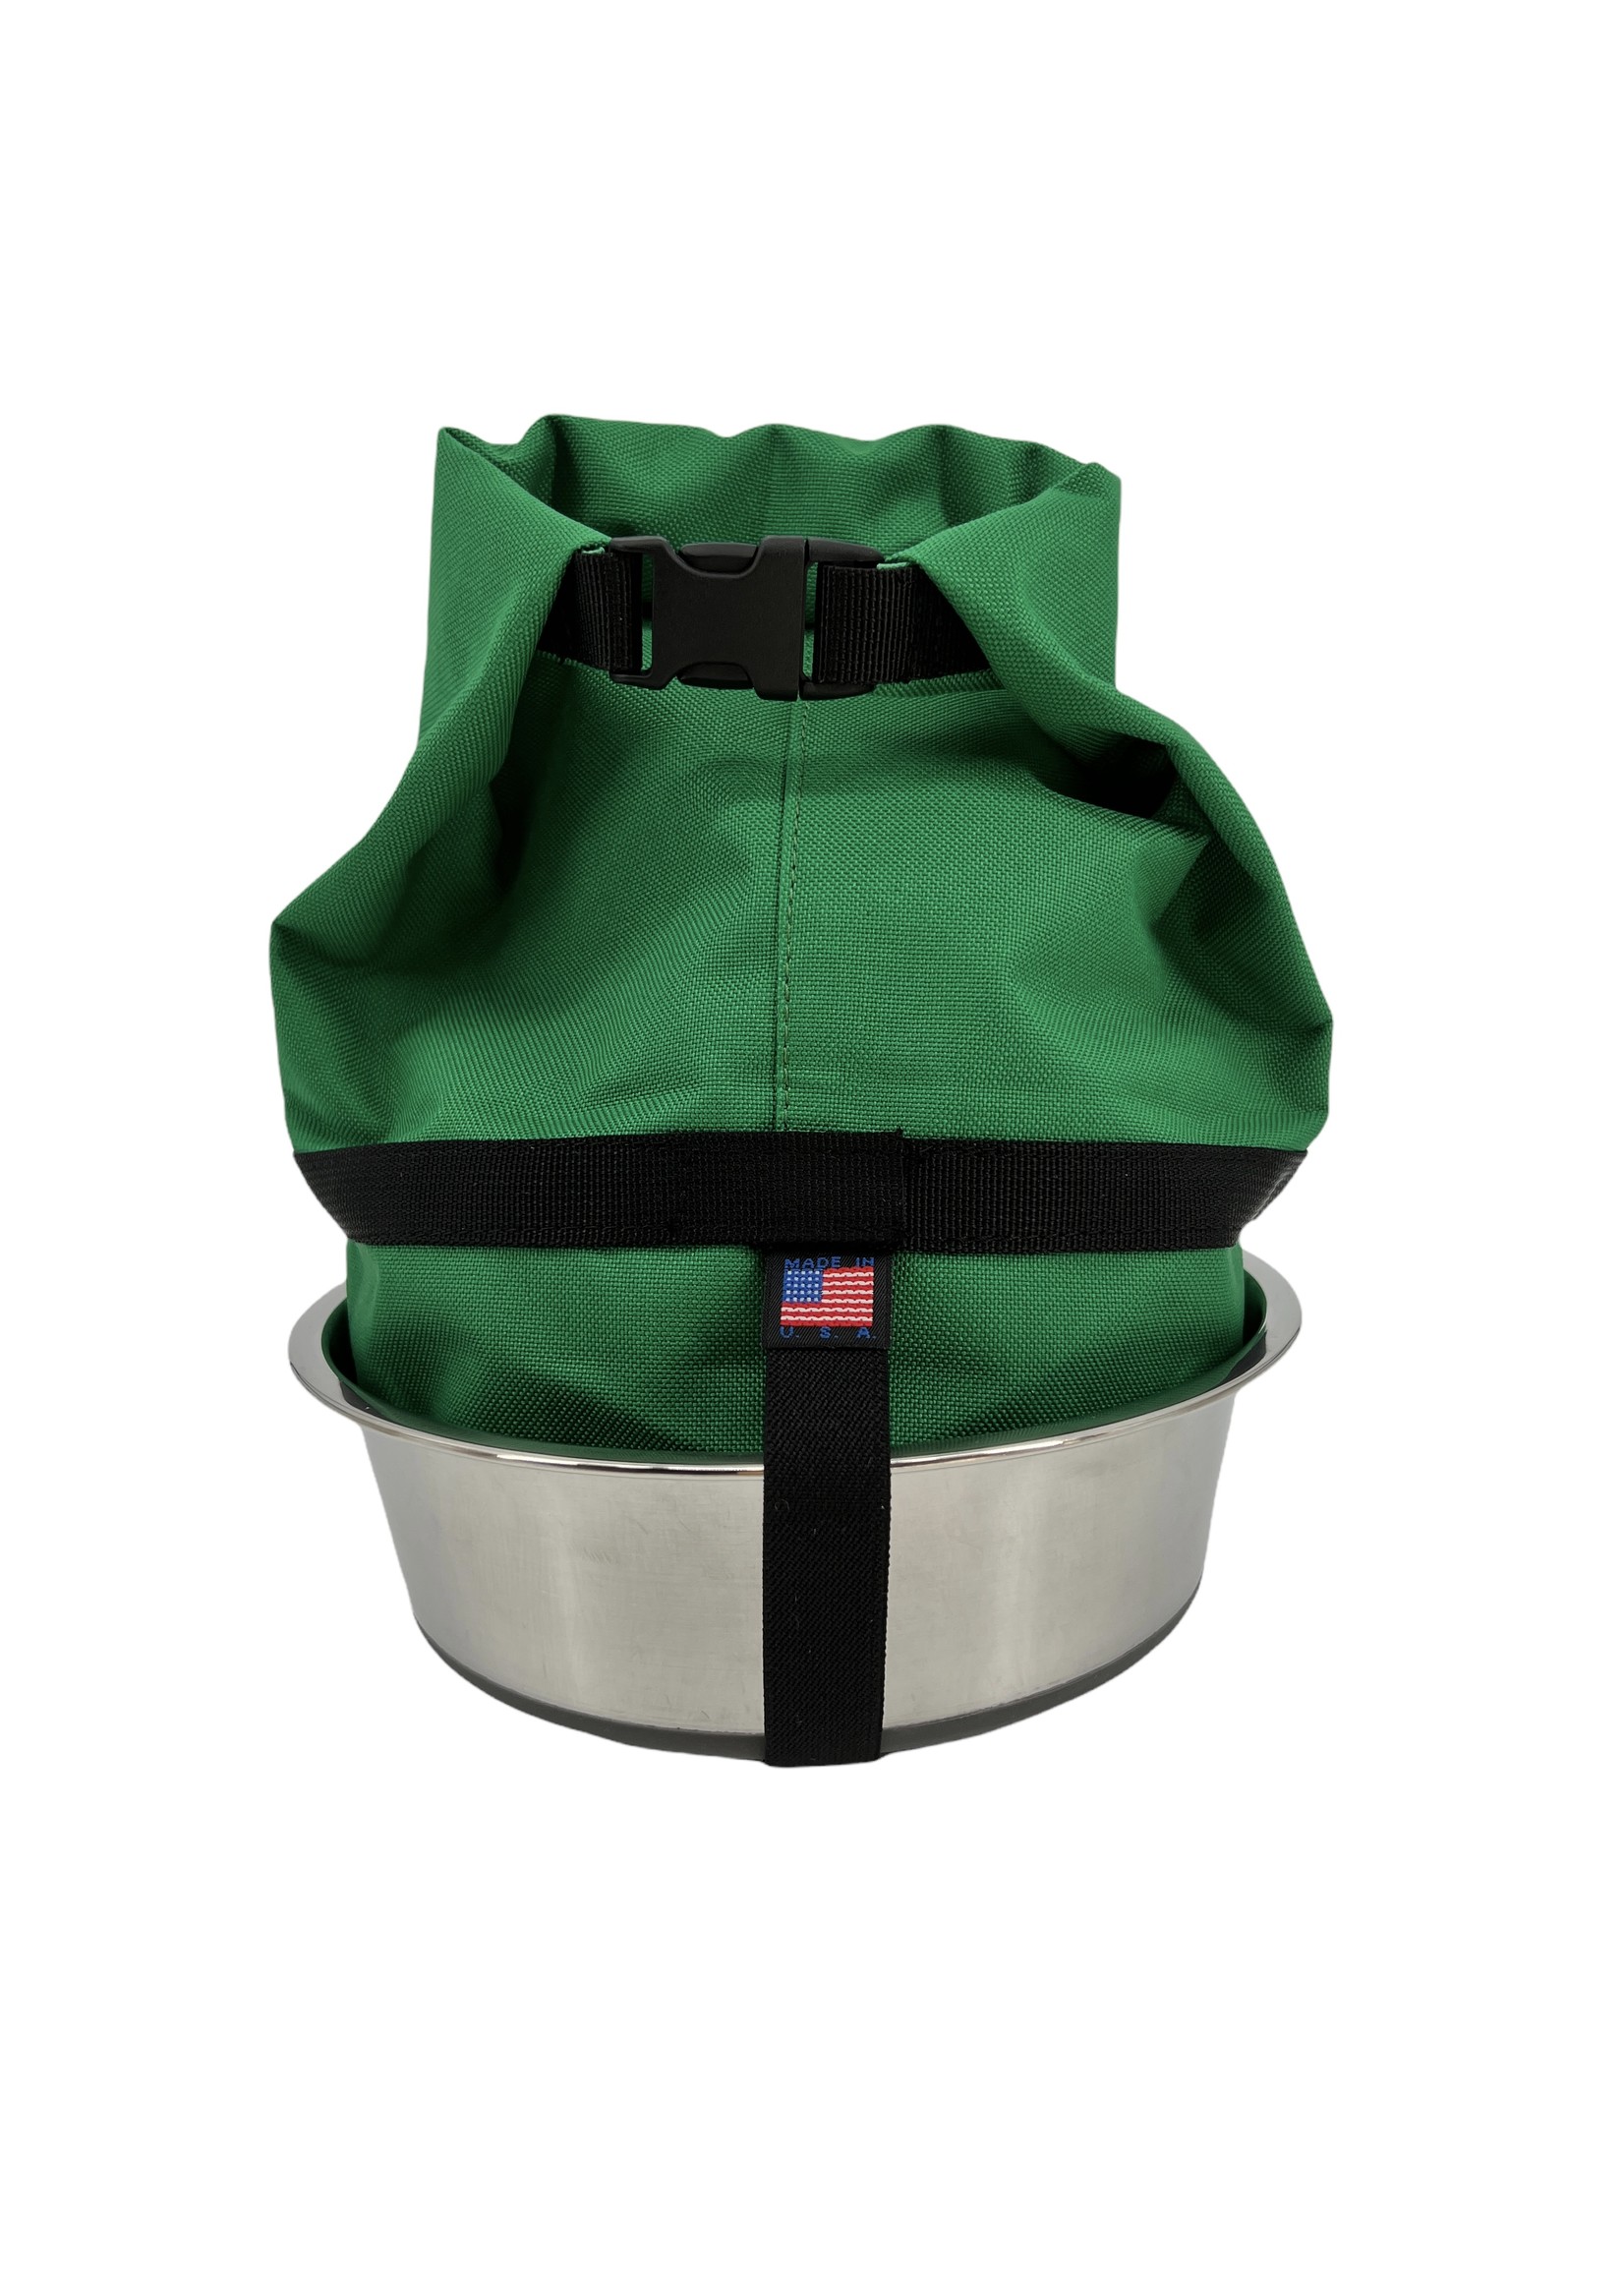 Bag-N-Bowl: Kibble Carrier